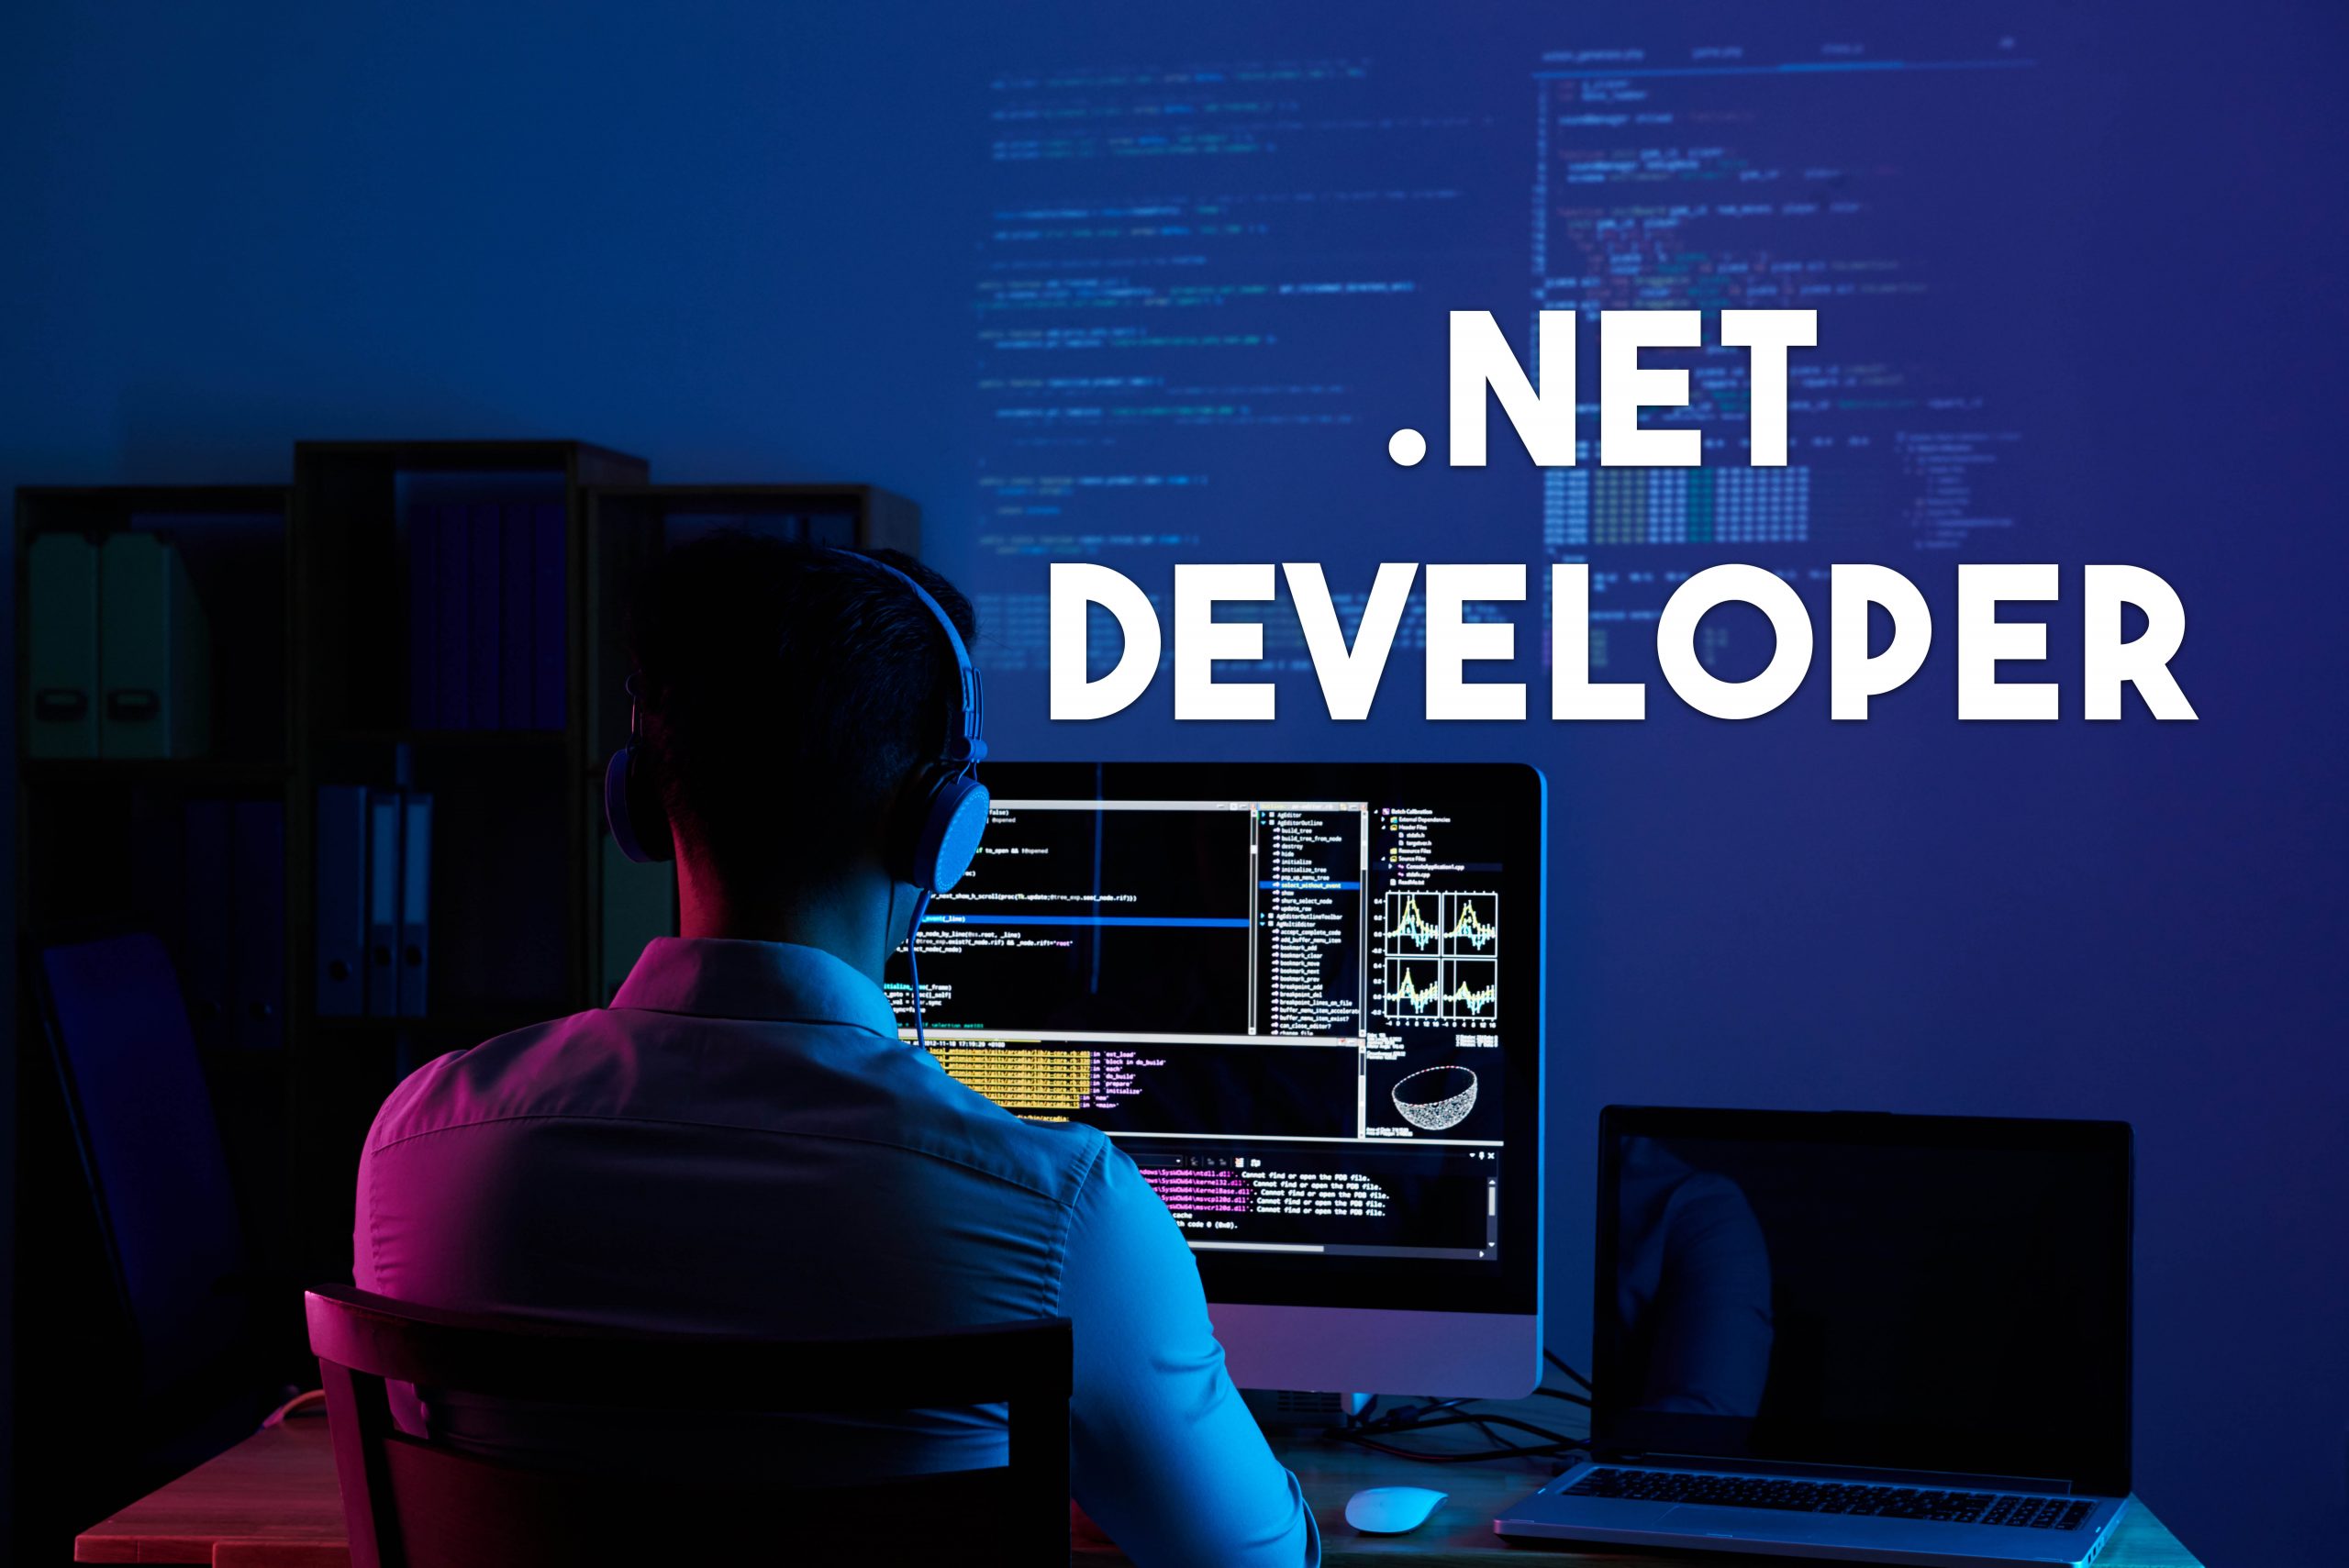 NET Developer jobs at IFS in Nunspeet, Netherlands - Exploreture